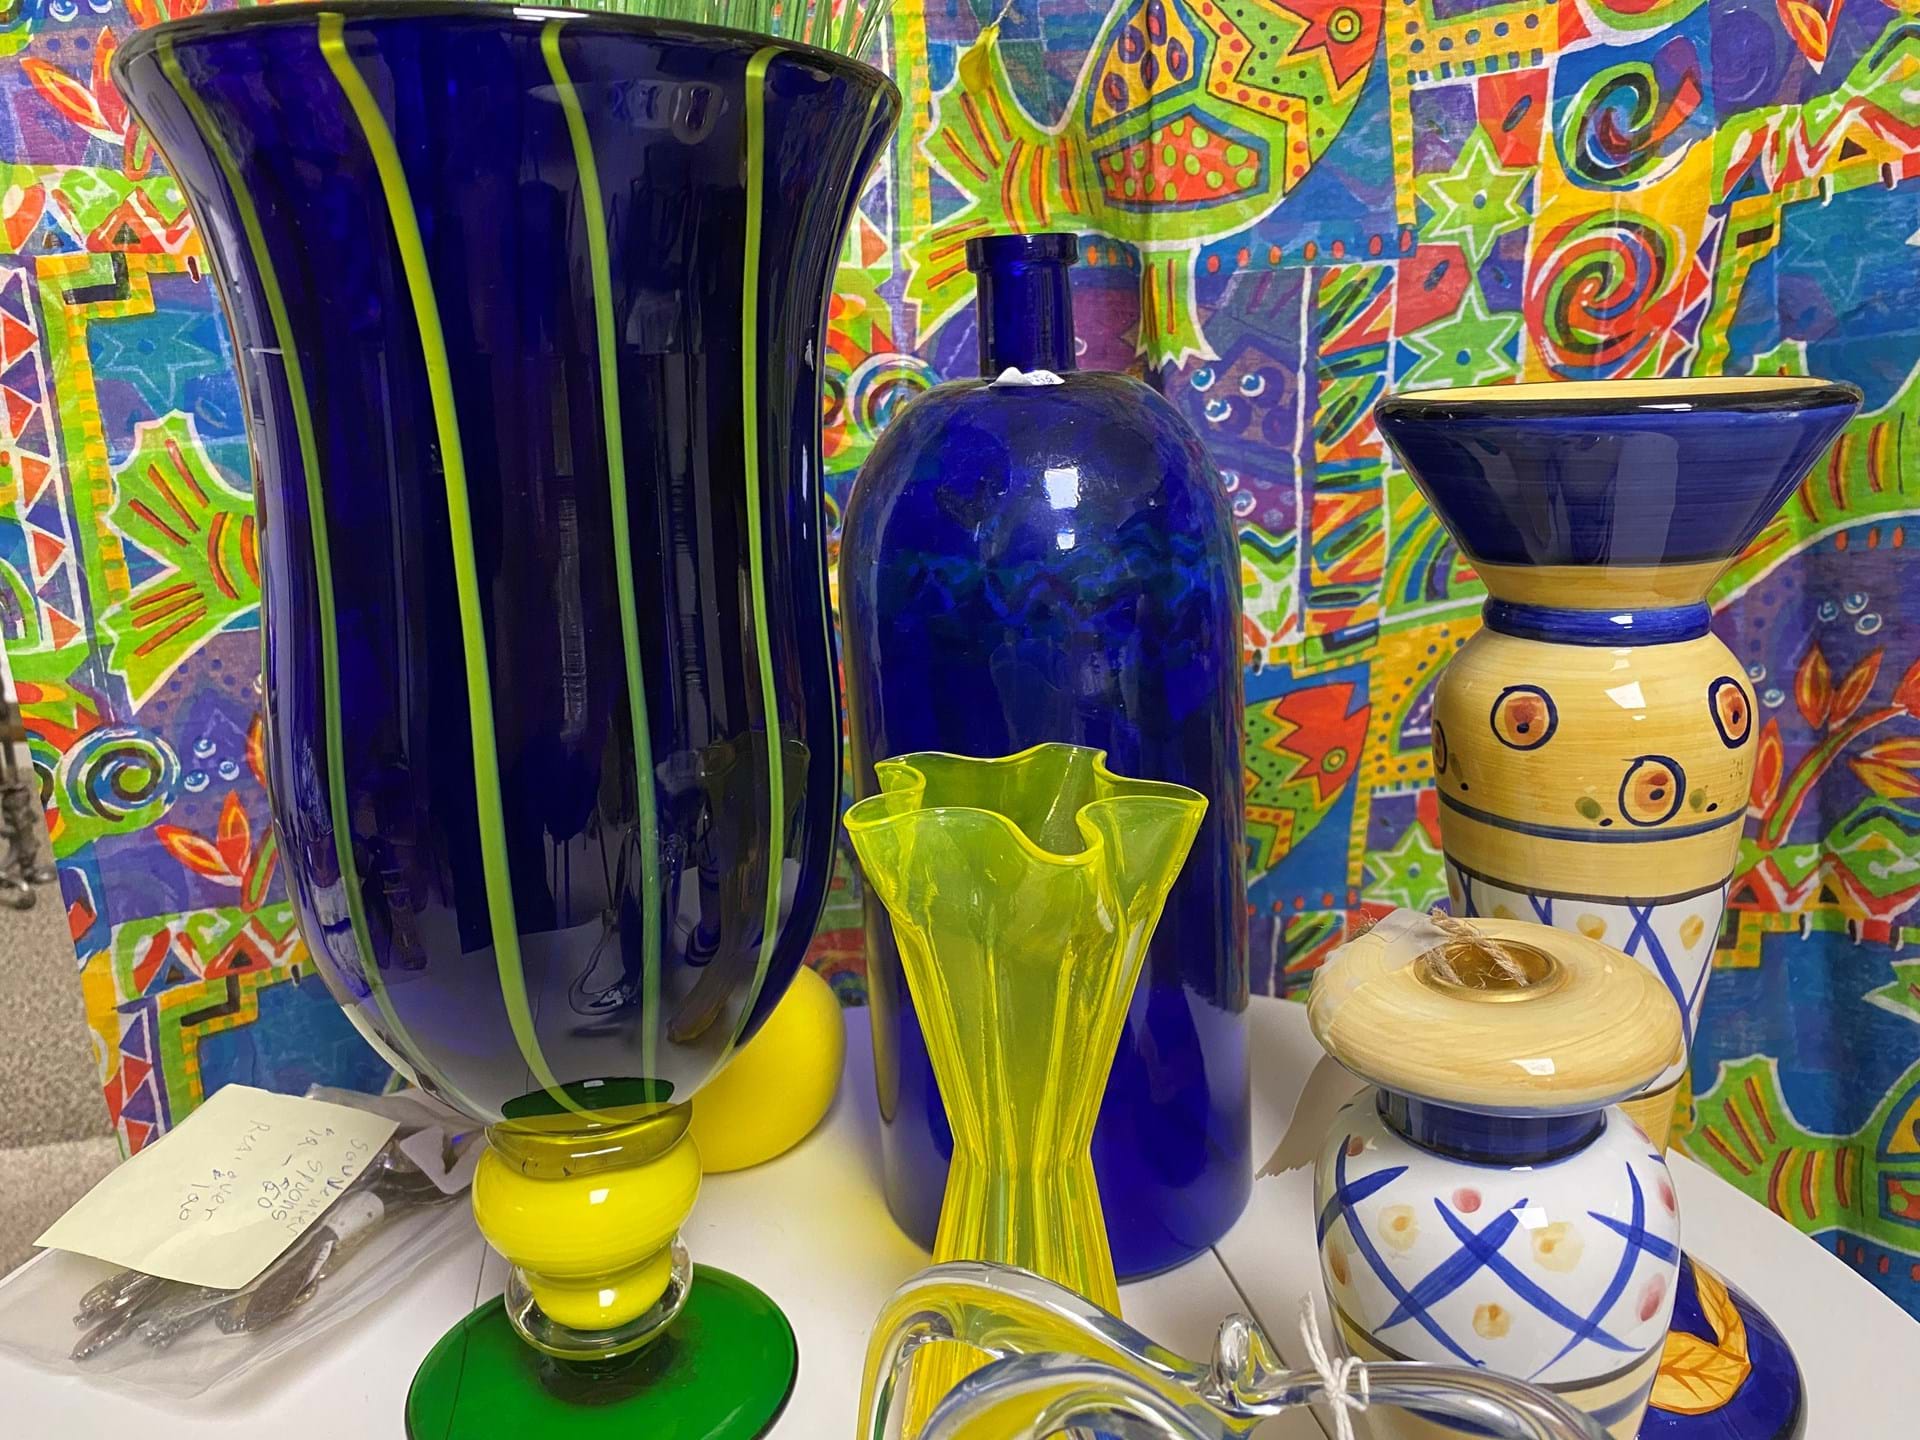 Unique glassware and pottery